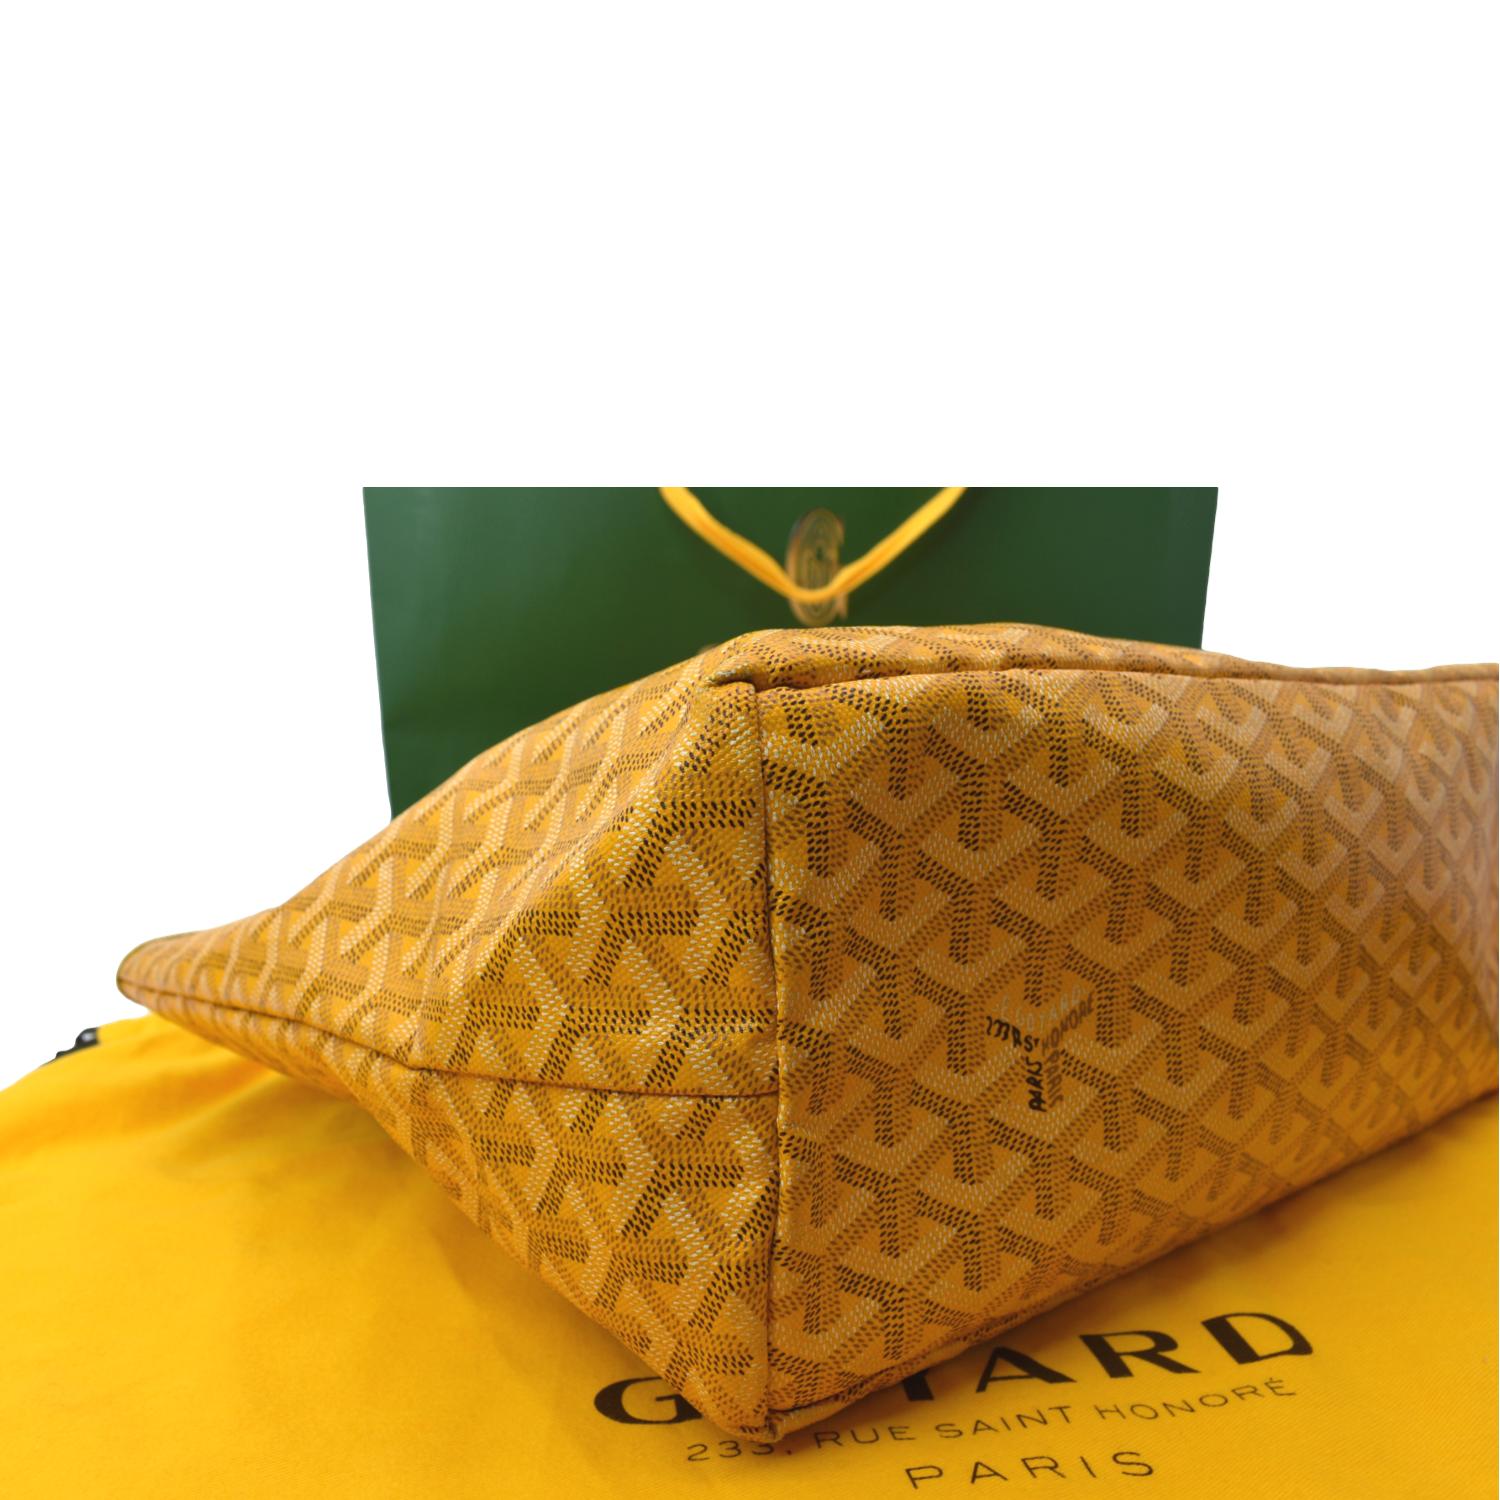 yellow goyard tote bag